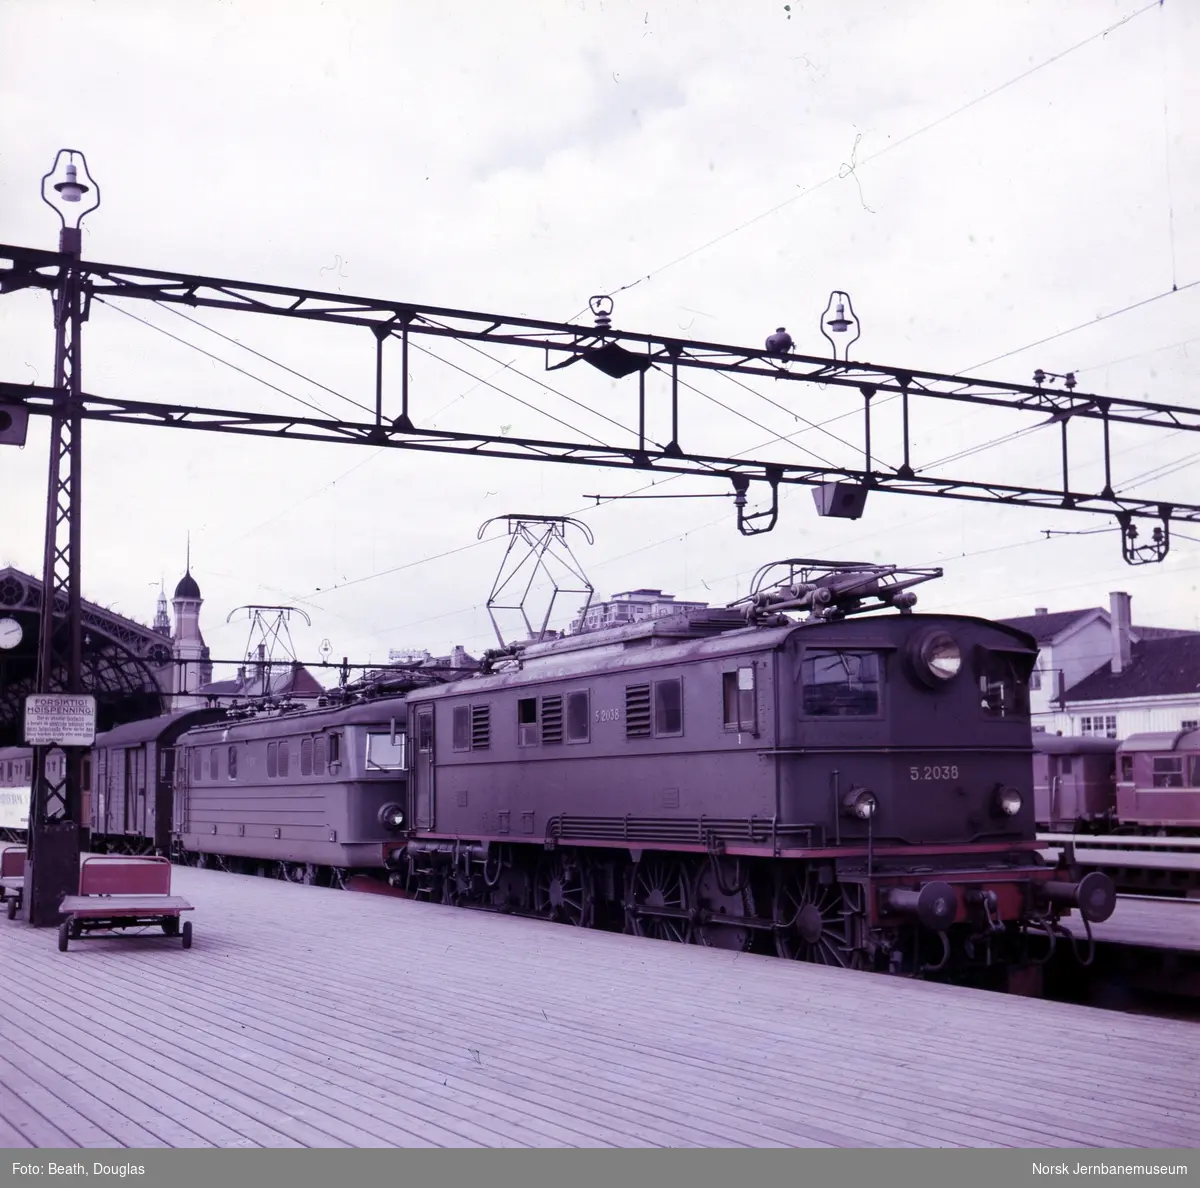 Elektrisk lokomotiv El 5 2038 foran El 11 i tog mot Østfoldbanen på Oslo Ø